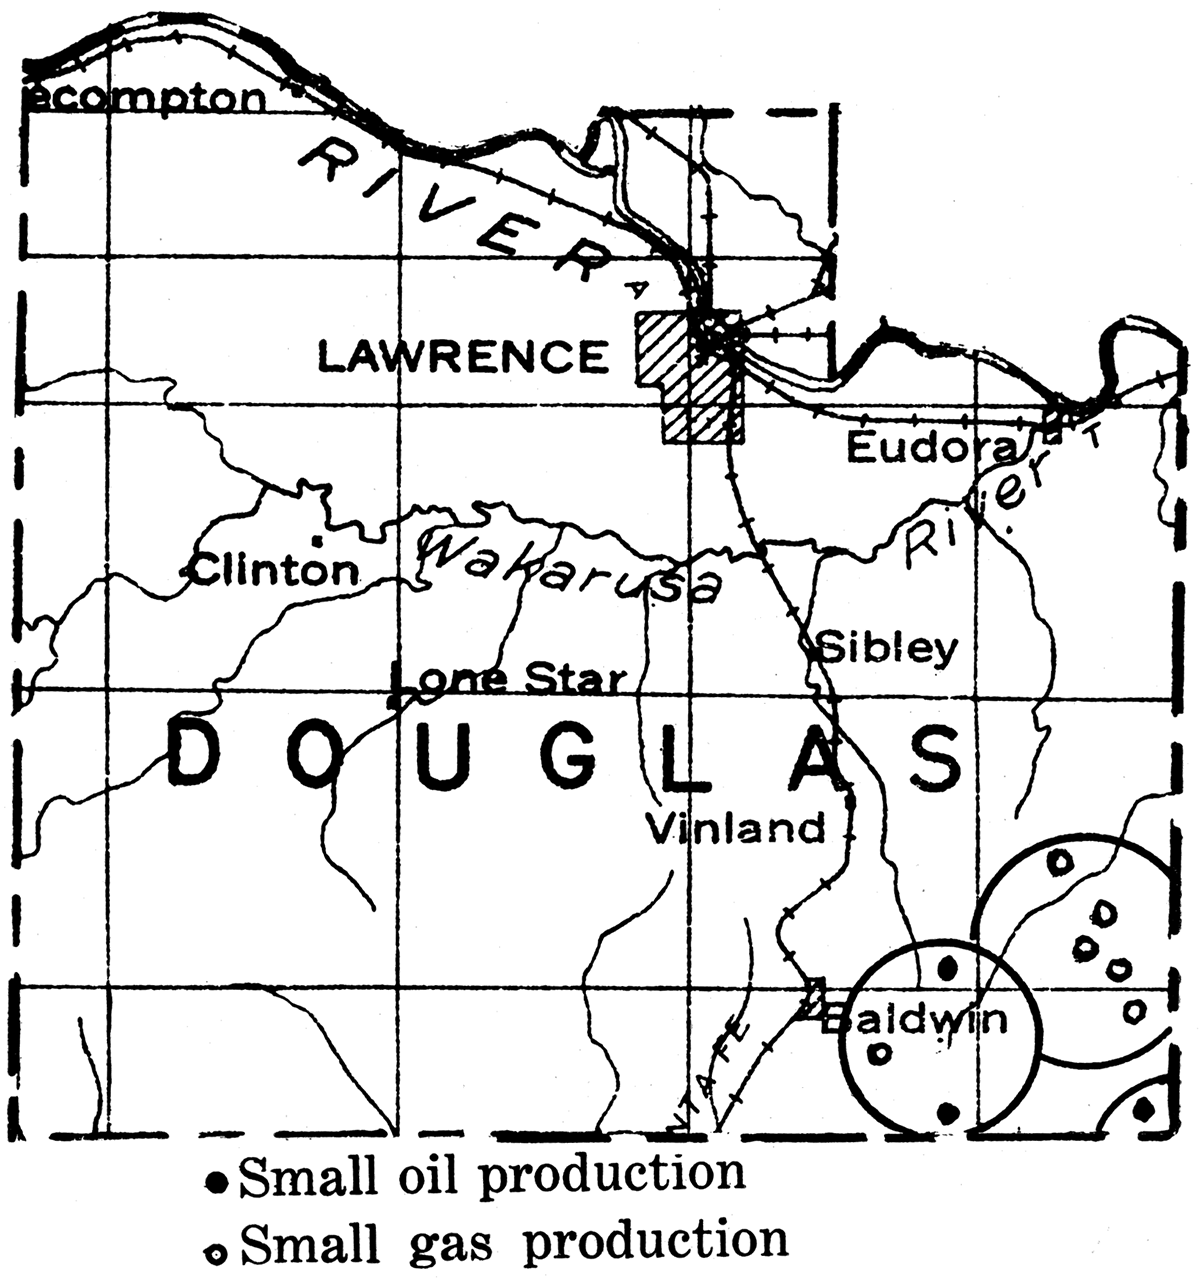 Douglas county.